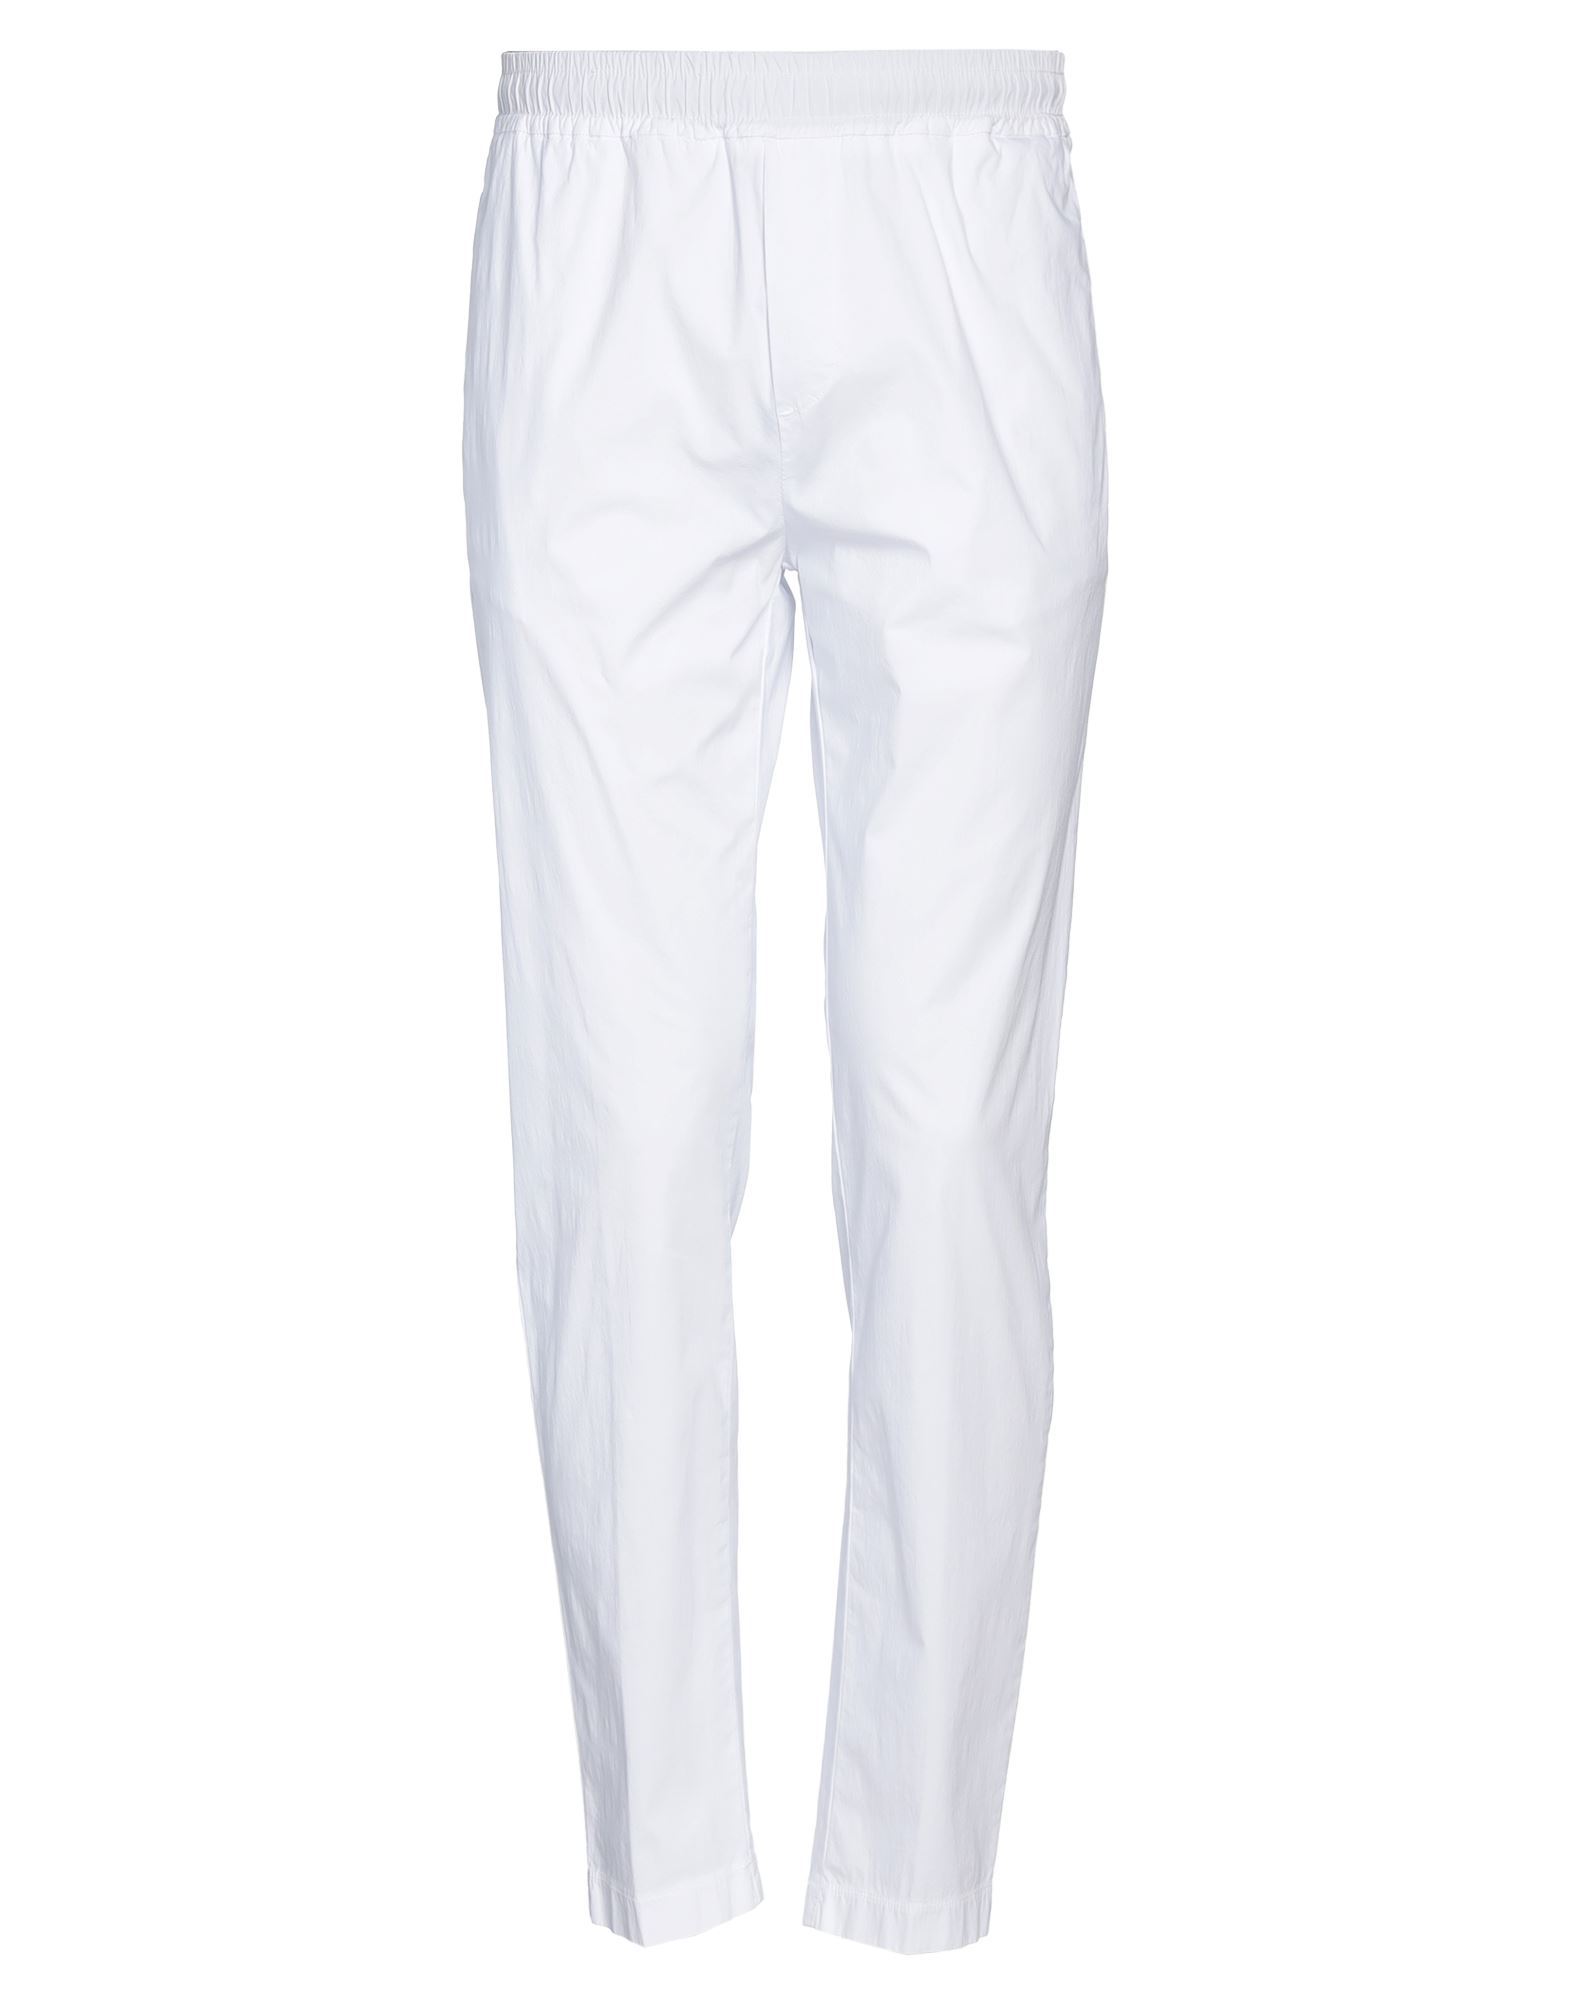 Pmds Premium Mood Denim Superior Pants In White